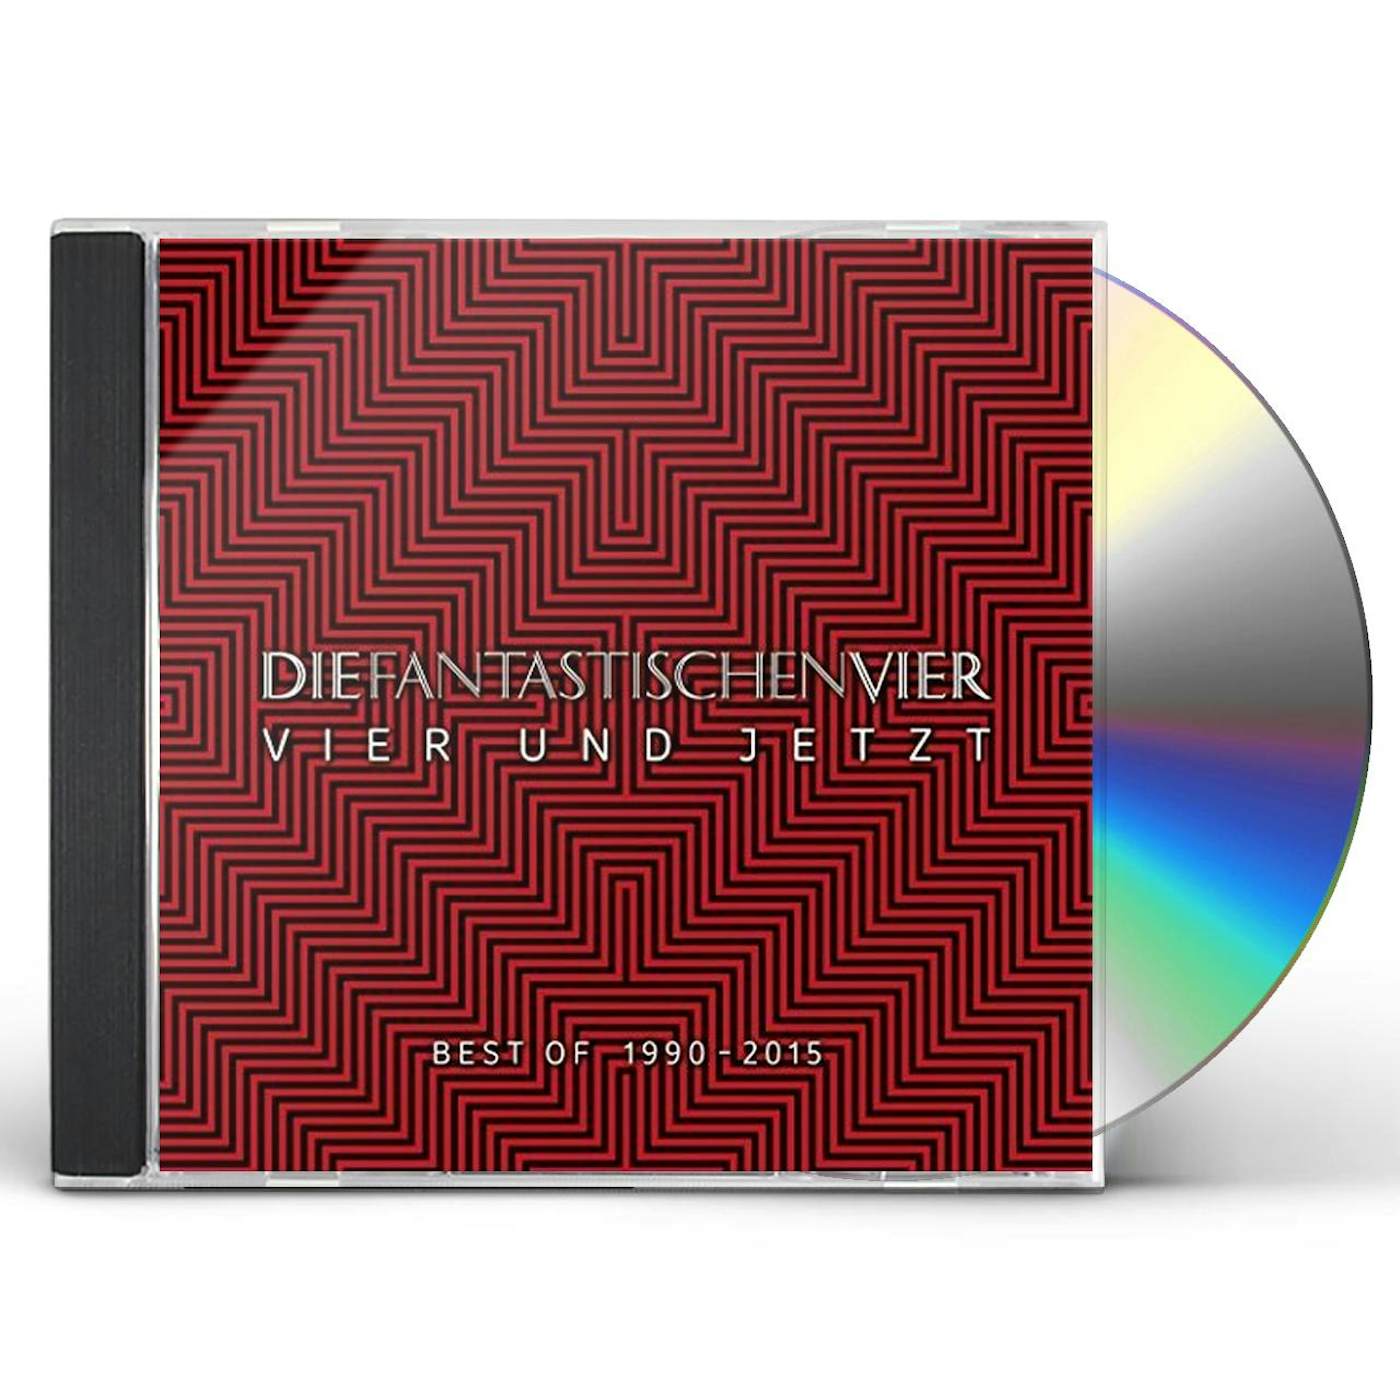 Fantastischen Vier VIER UND JETZT (BEST OF 1990 - 2015) CD